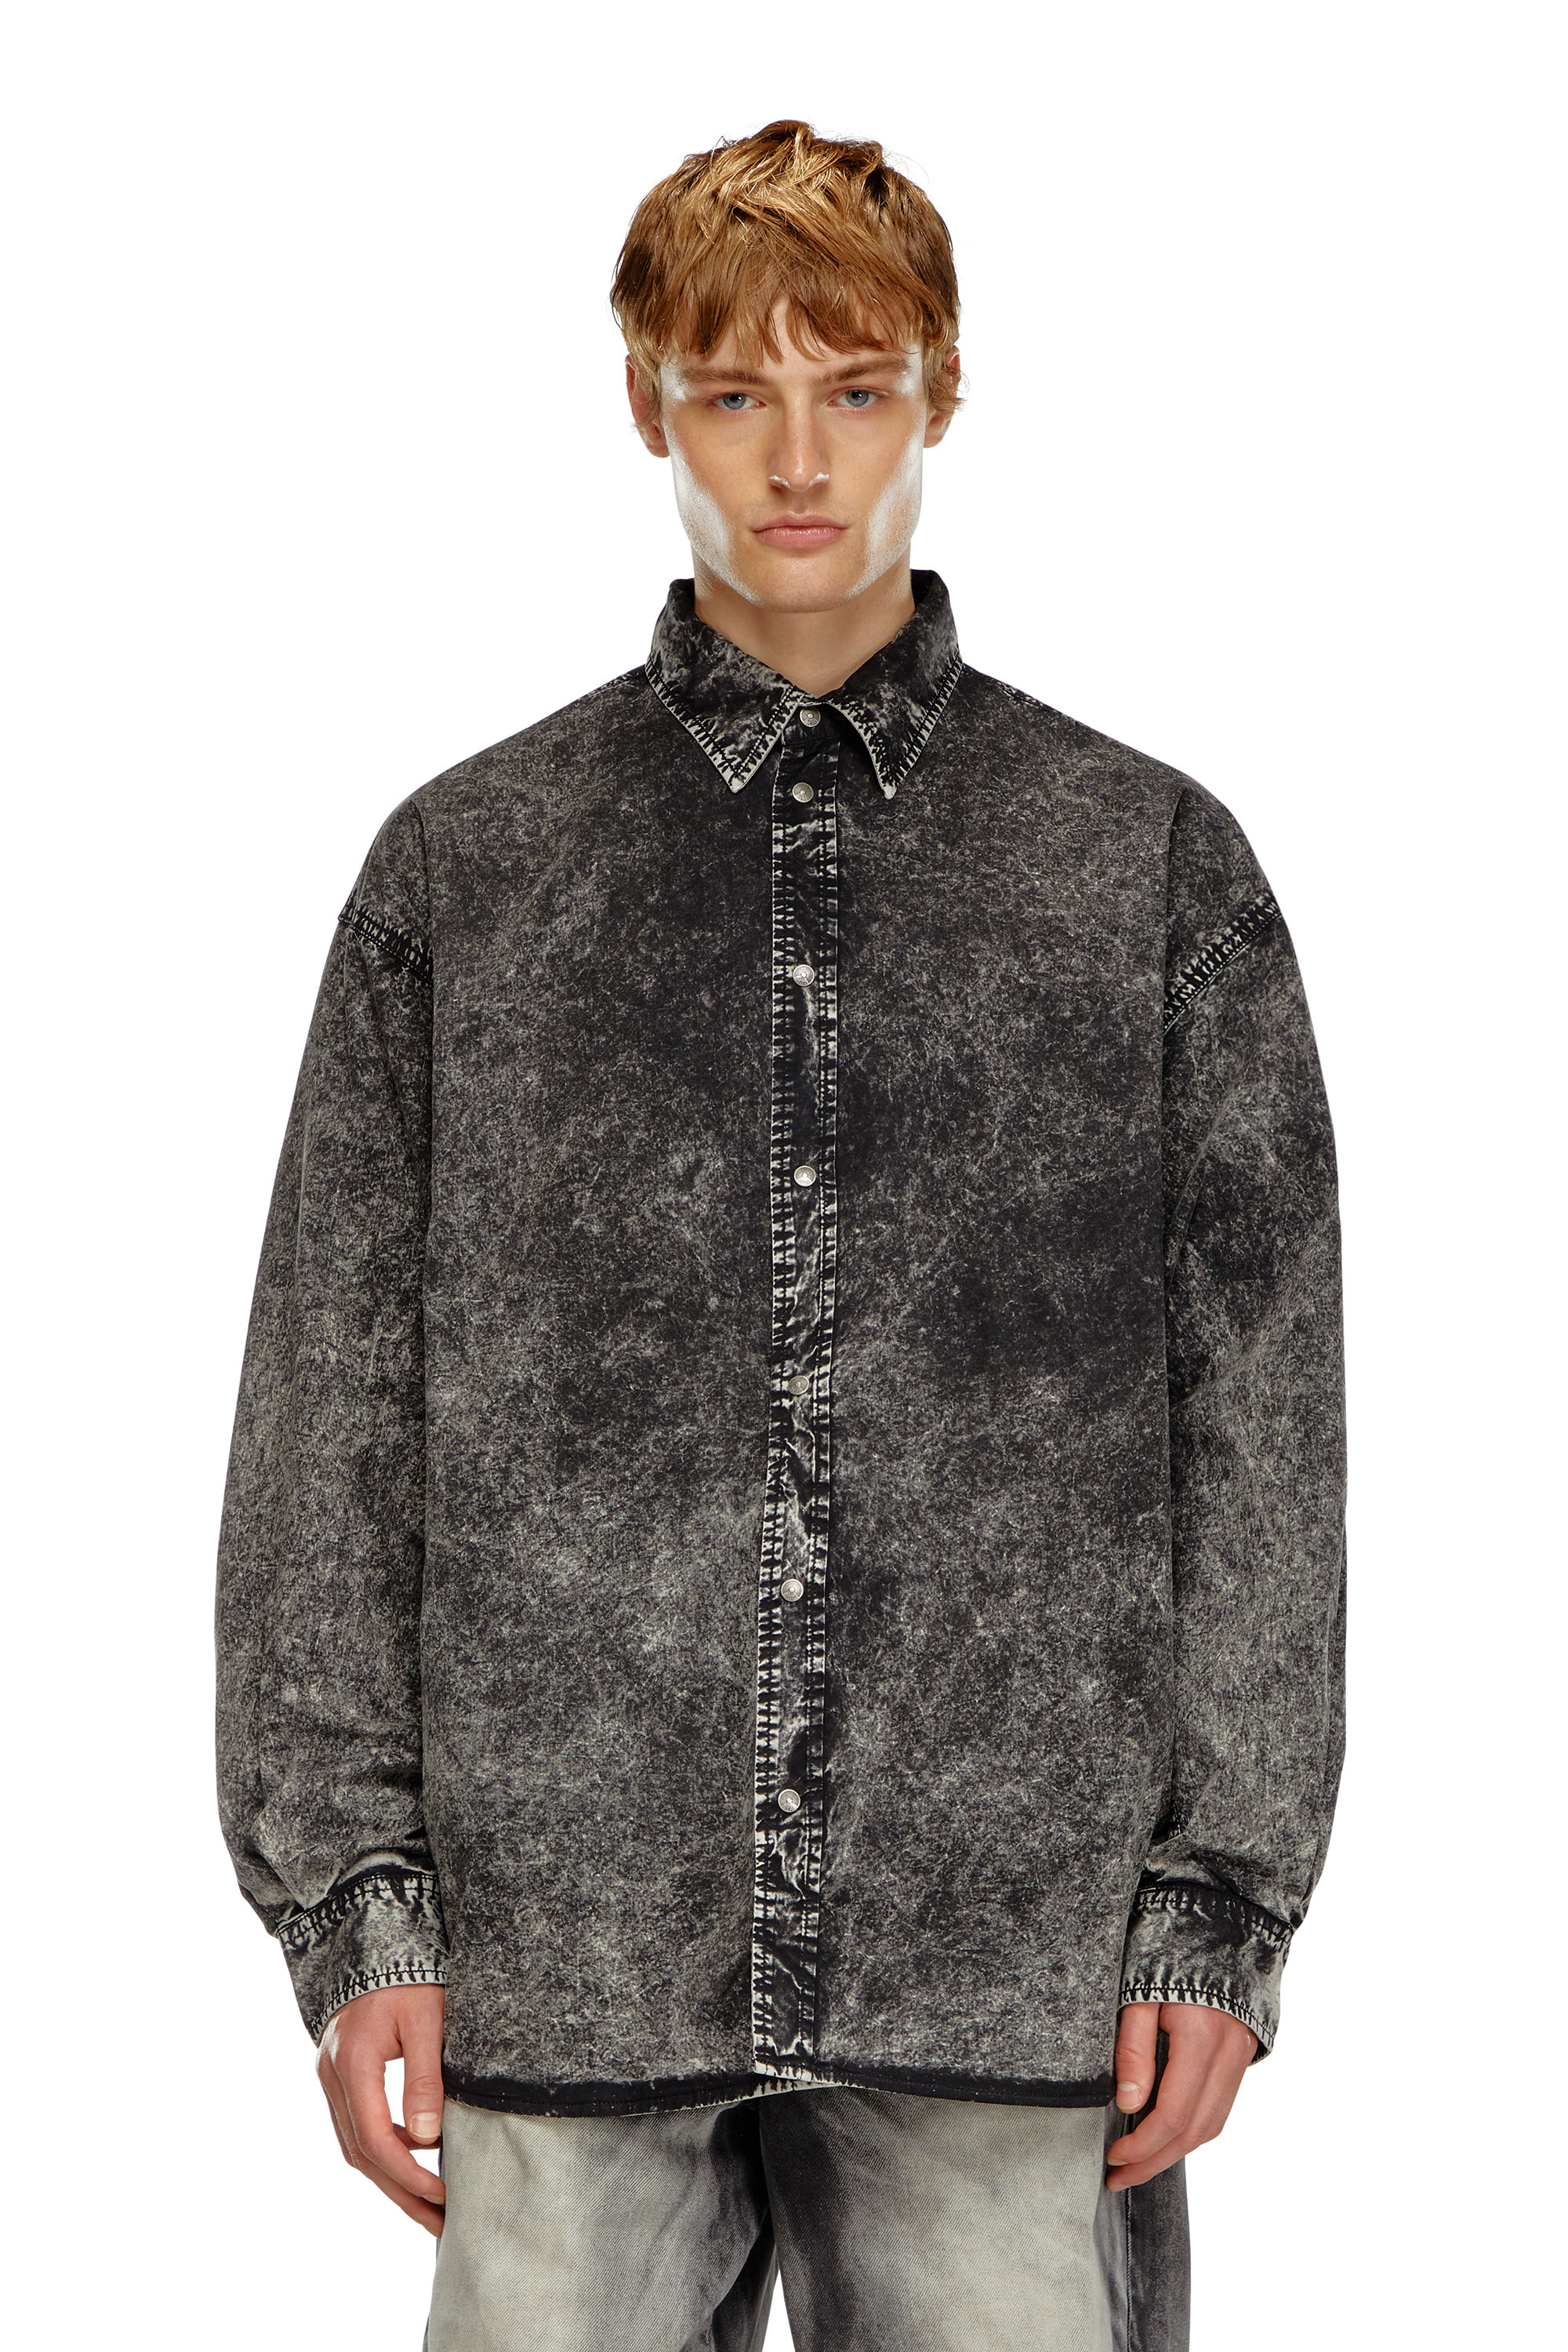 Diesel - S-VEKEN, Male Shirt in marbled cotton in ブラック - Image 1